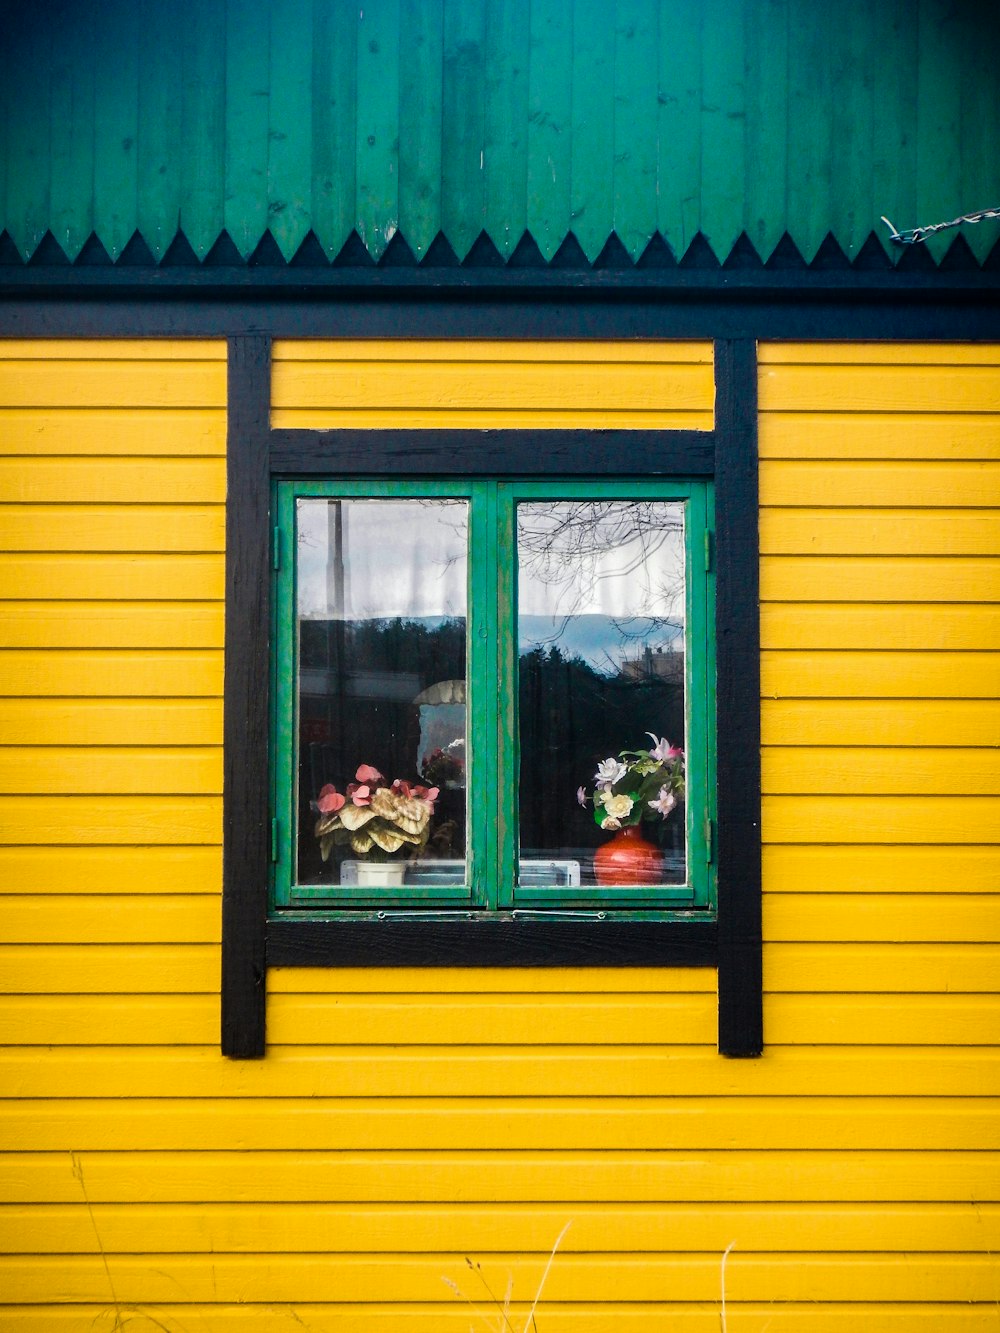 노란색과 검은 색으로 그린 녹색 프레임 유리창이 있는 집